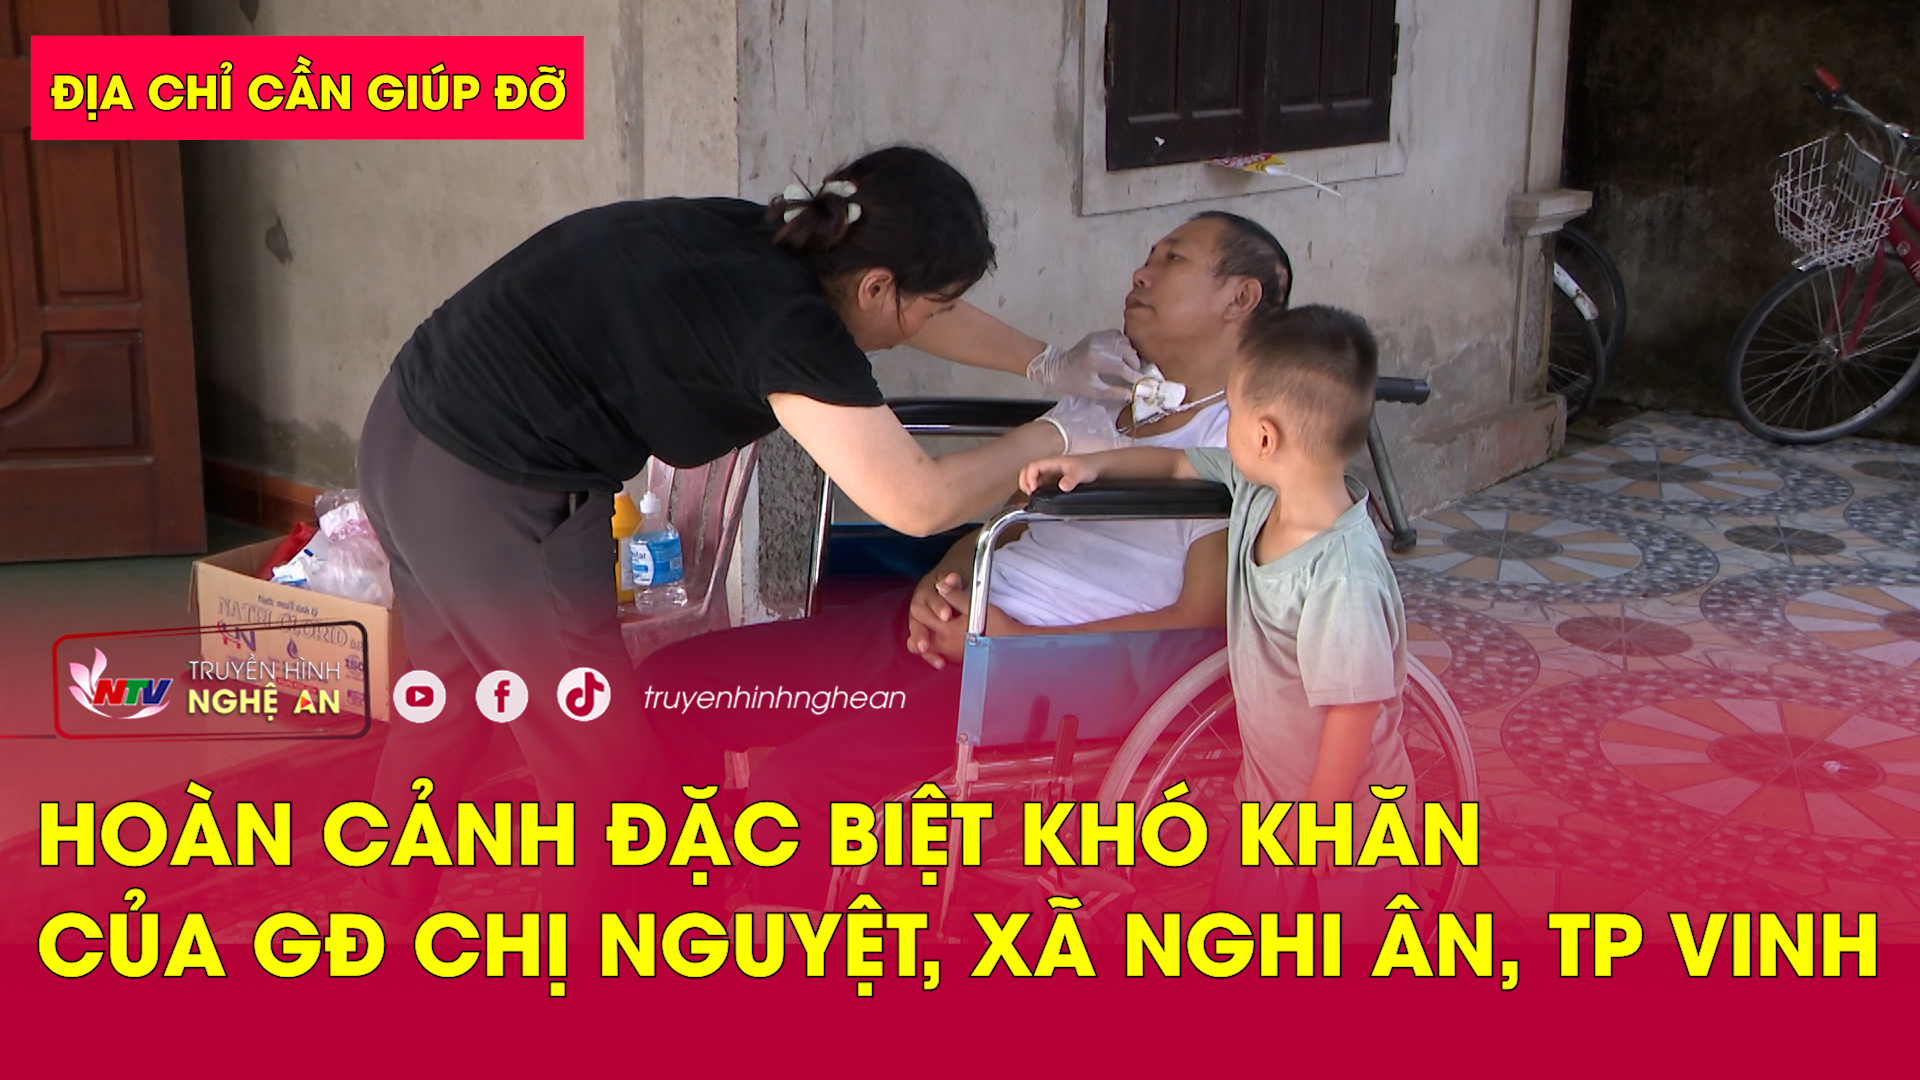 Địa chỉ cần giúp đỡ: Hoàn cảnh đặc biệt khó khăn của gia đình chị Phạm Thị Nguyệt ở Nghi Ân, TP Vinh